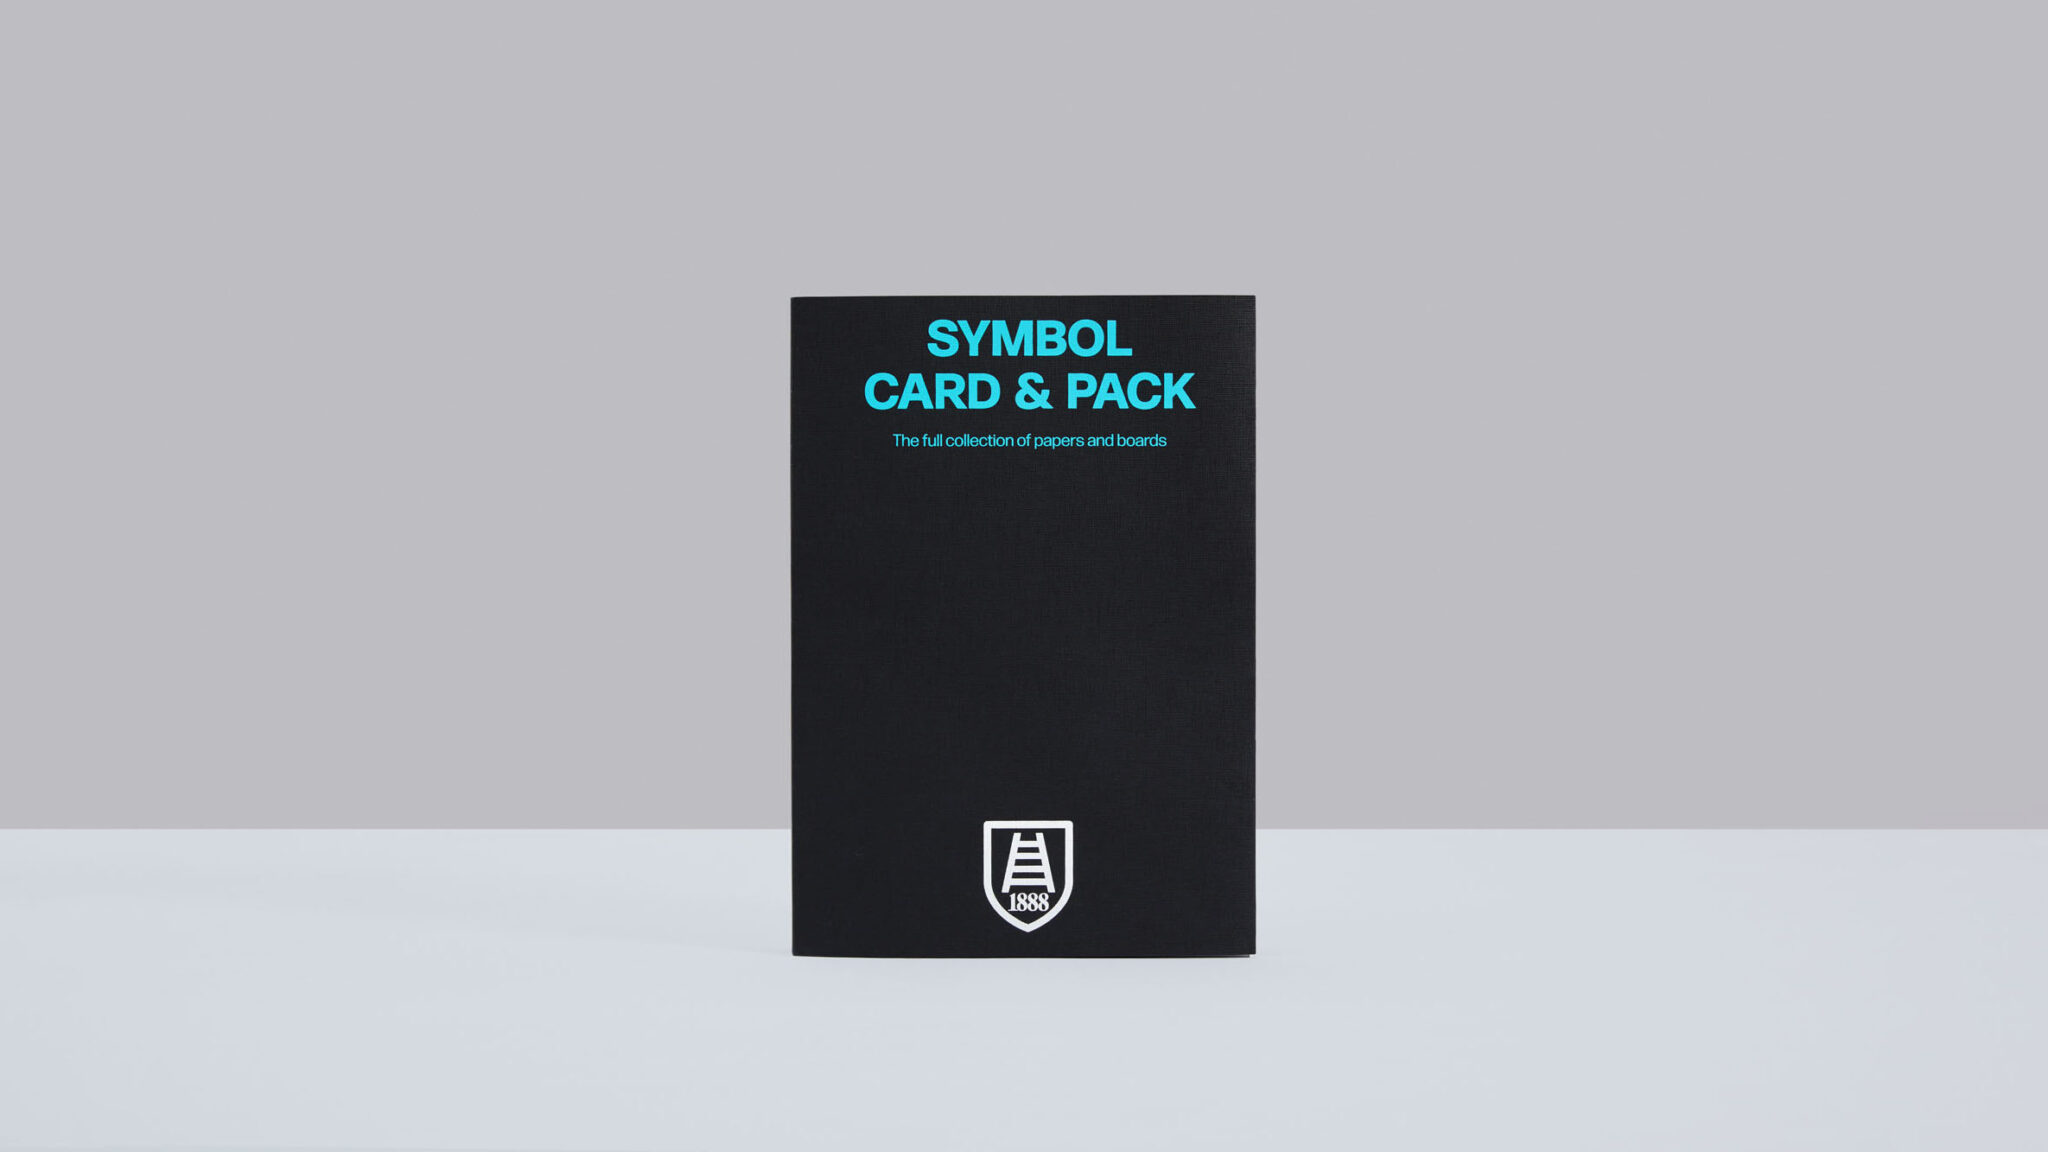 新样纸册中提供的完整Symbol Card 和 Symbol Pack 系列